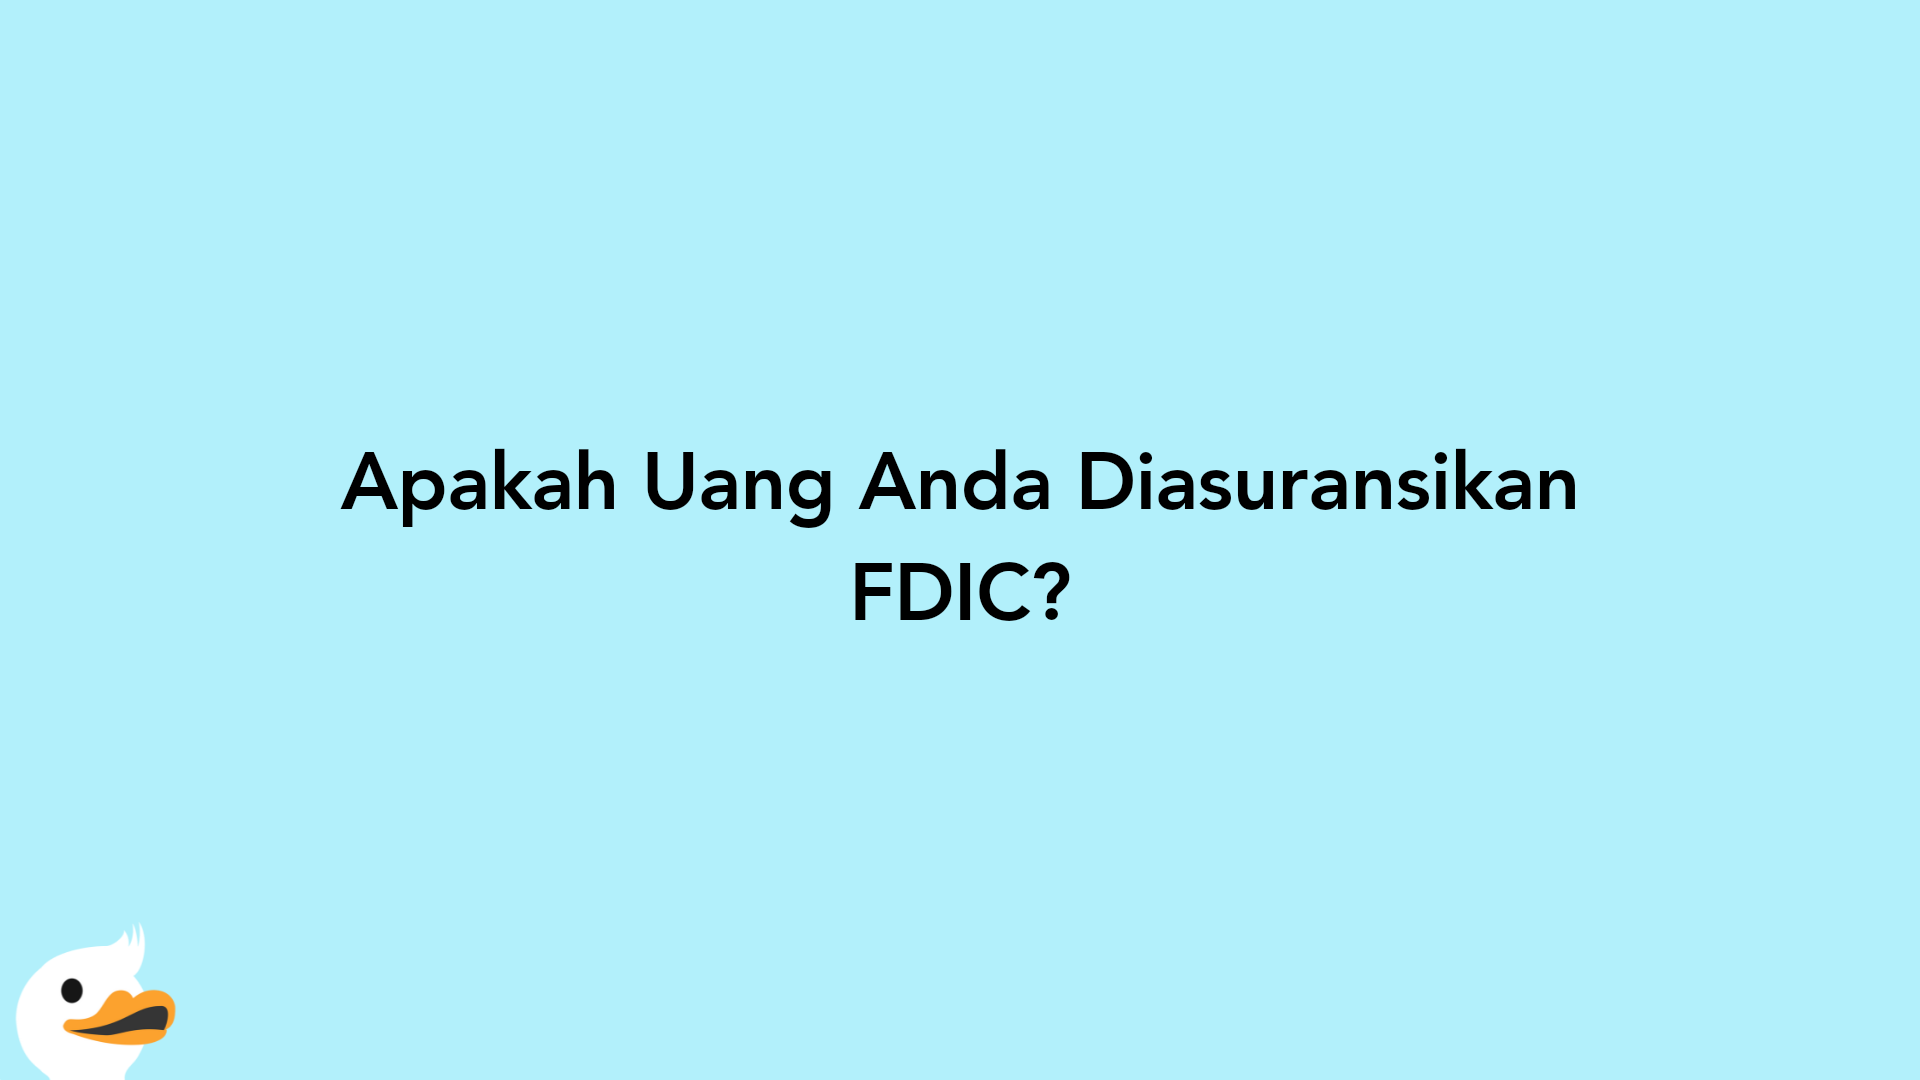 Apakah Uang Anda Diasuransikan FDIC?